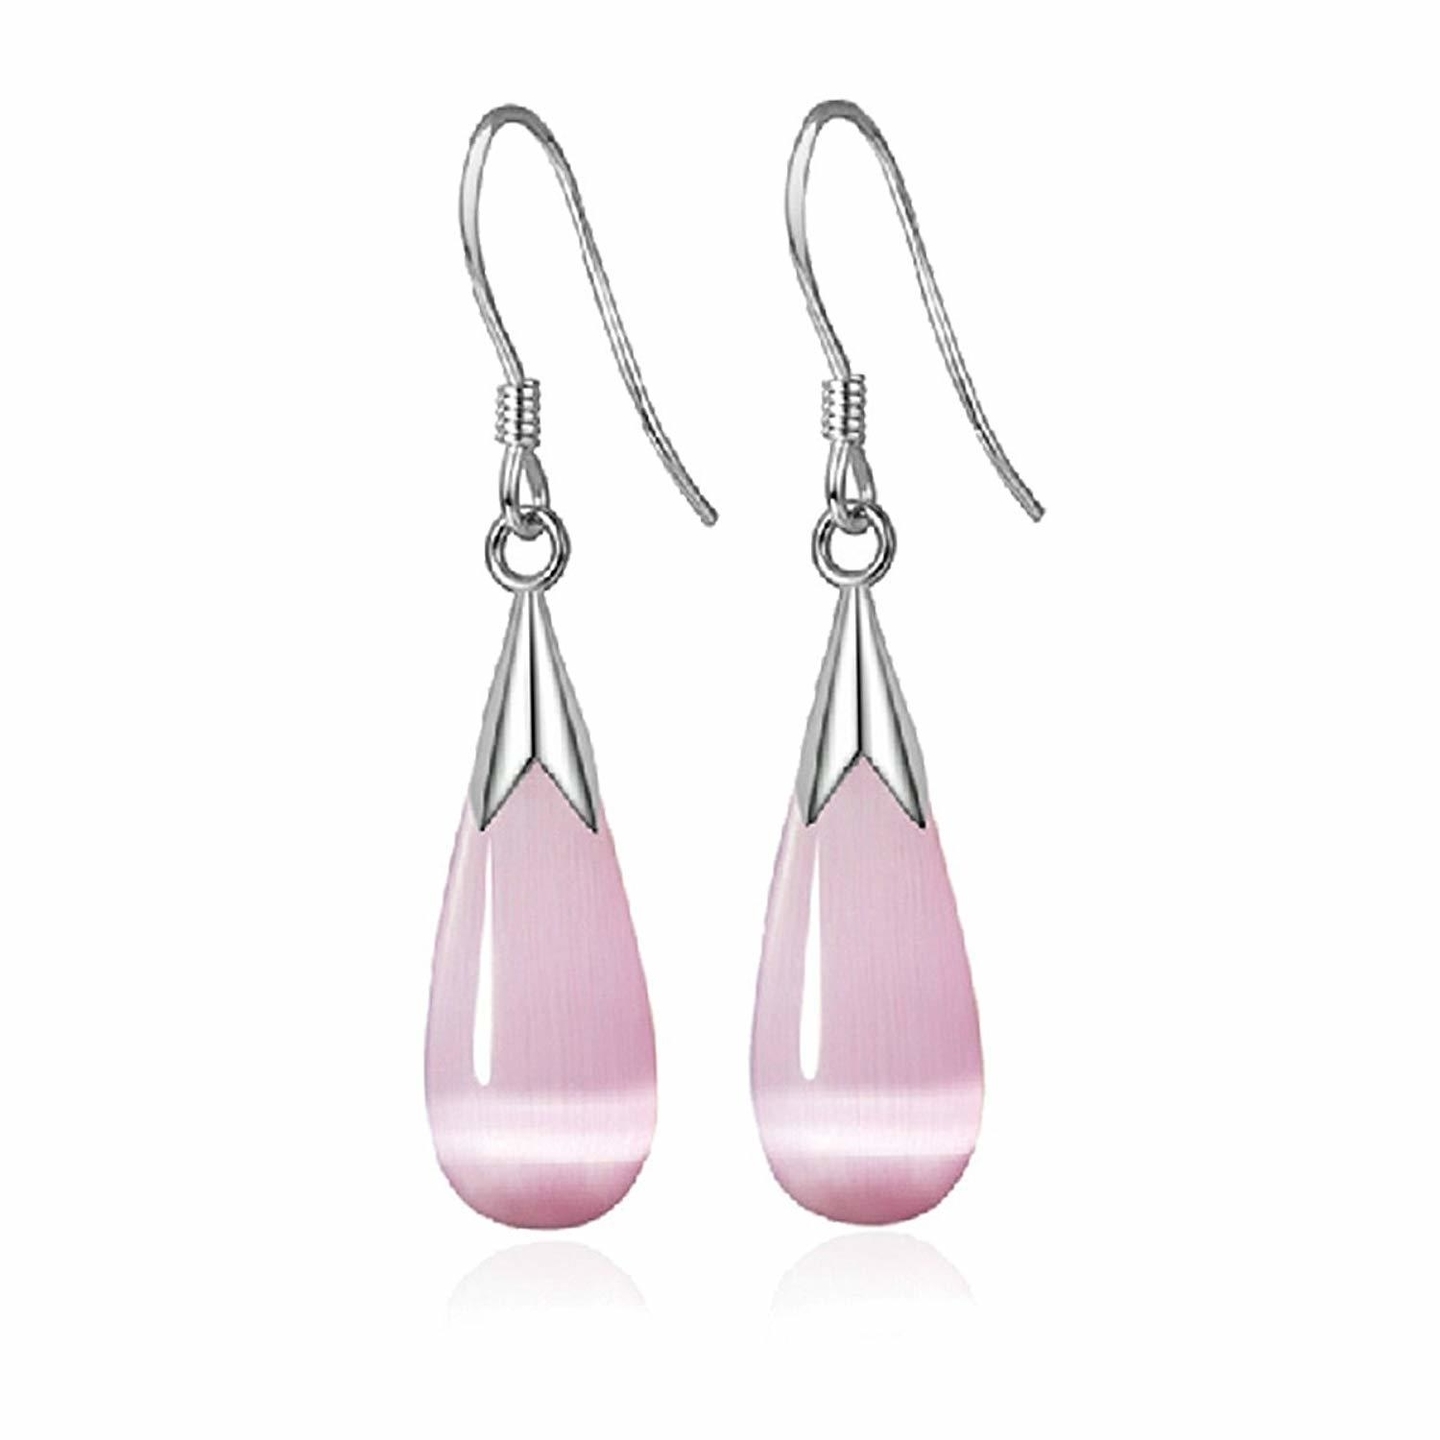 Ashiana 925 Sterling-Silver Water-drop Cats Eye Earrings for Women Pink